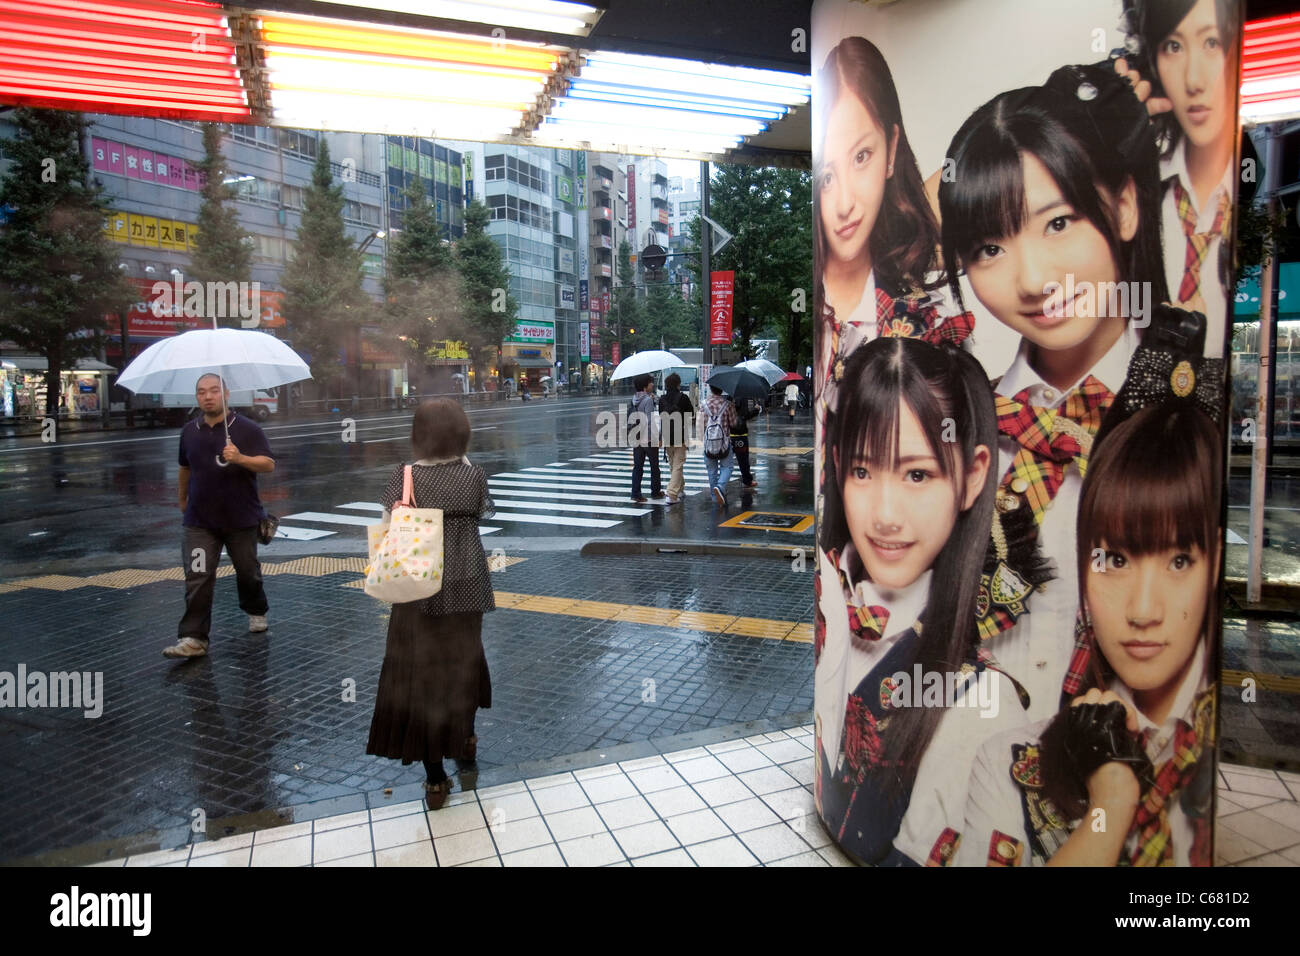 Bild von jungen Mädchen in einem Cosplay, Anime, Manga und Rollenspiel Spieleladen in Akihabara, Tokyo, Japan. Stockfoto